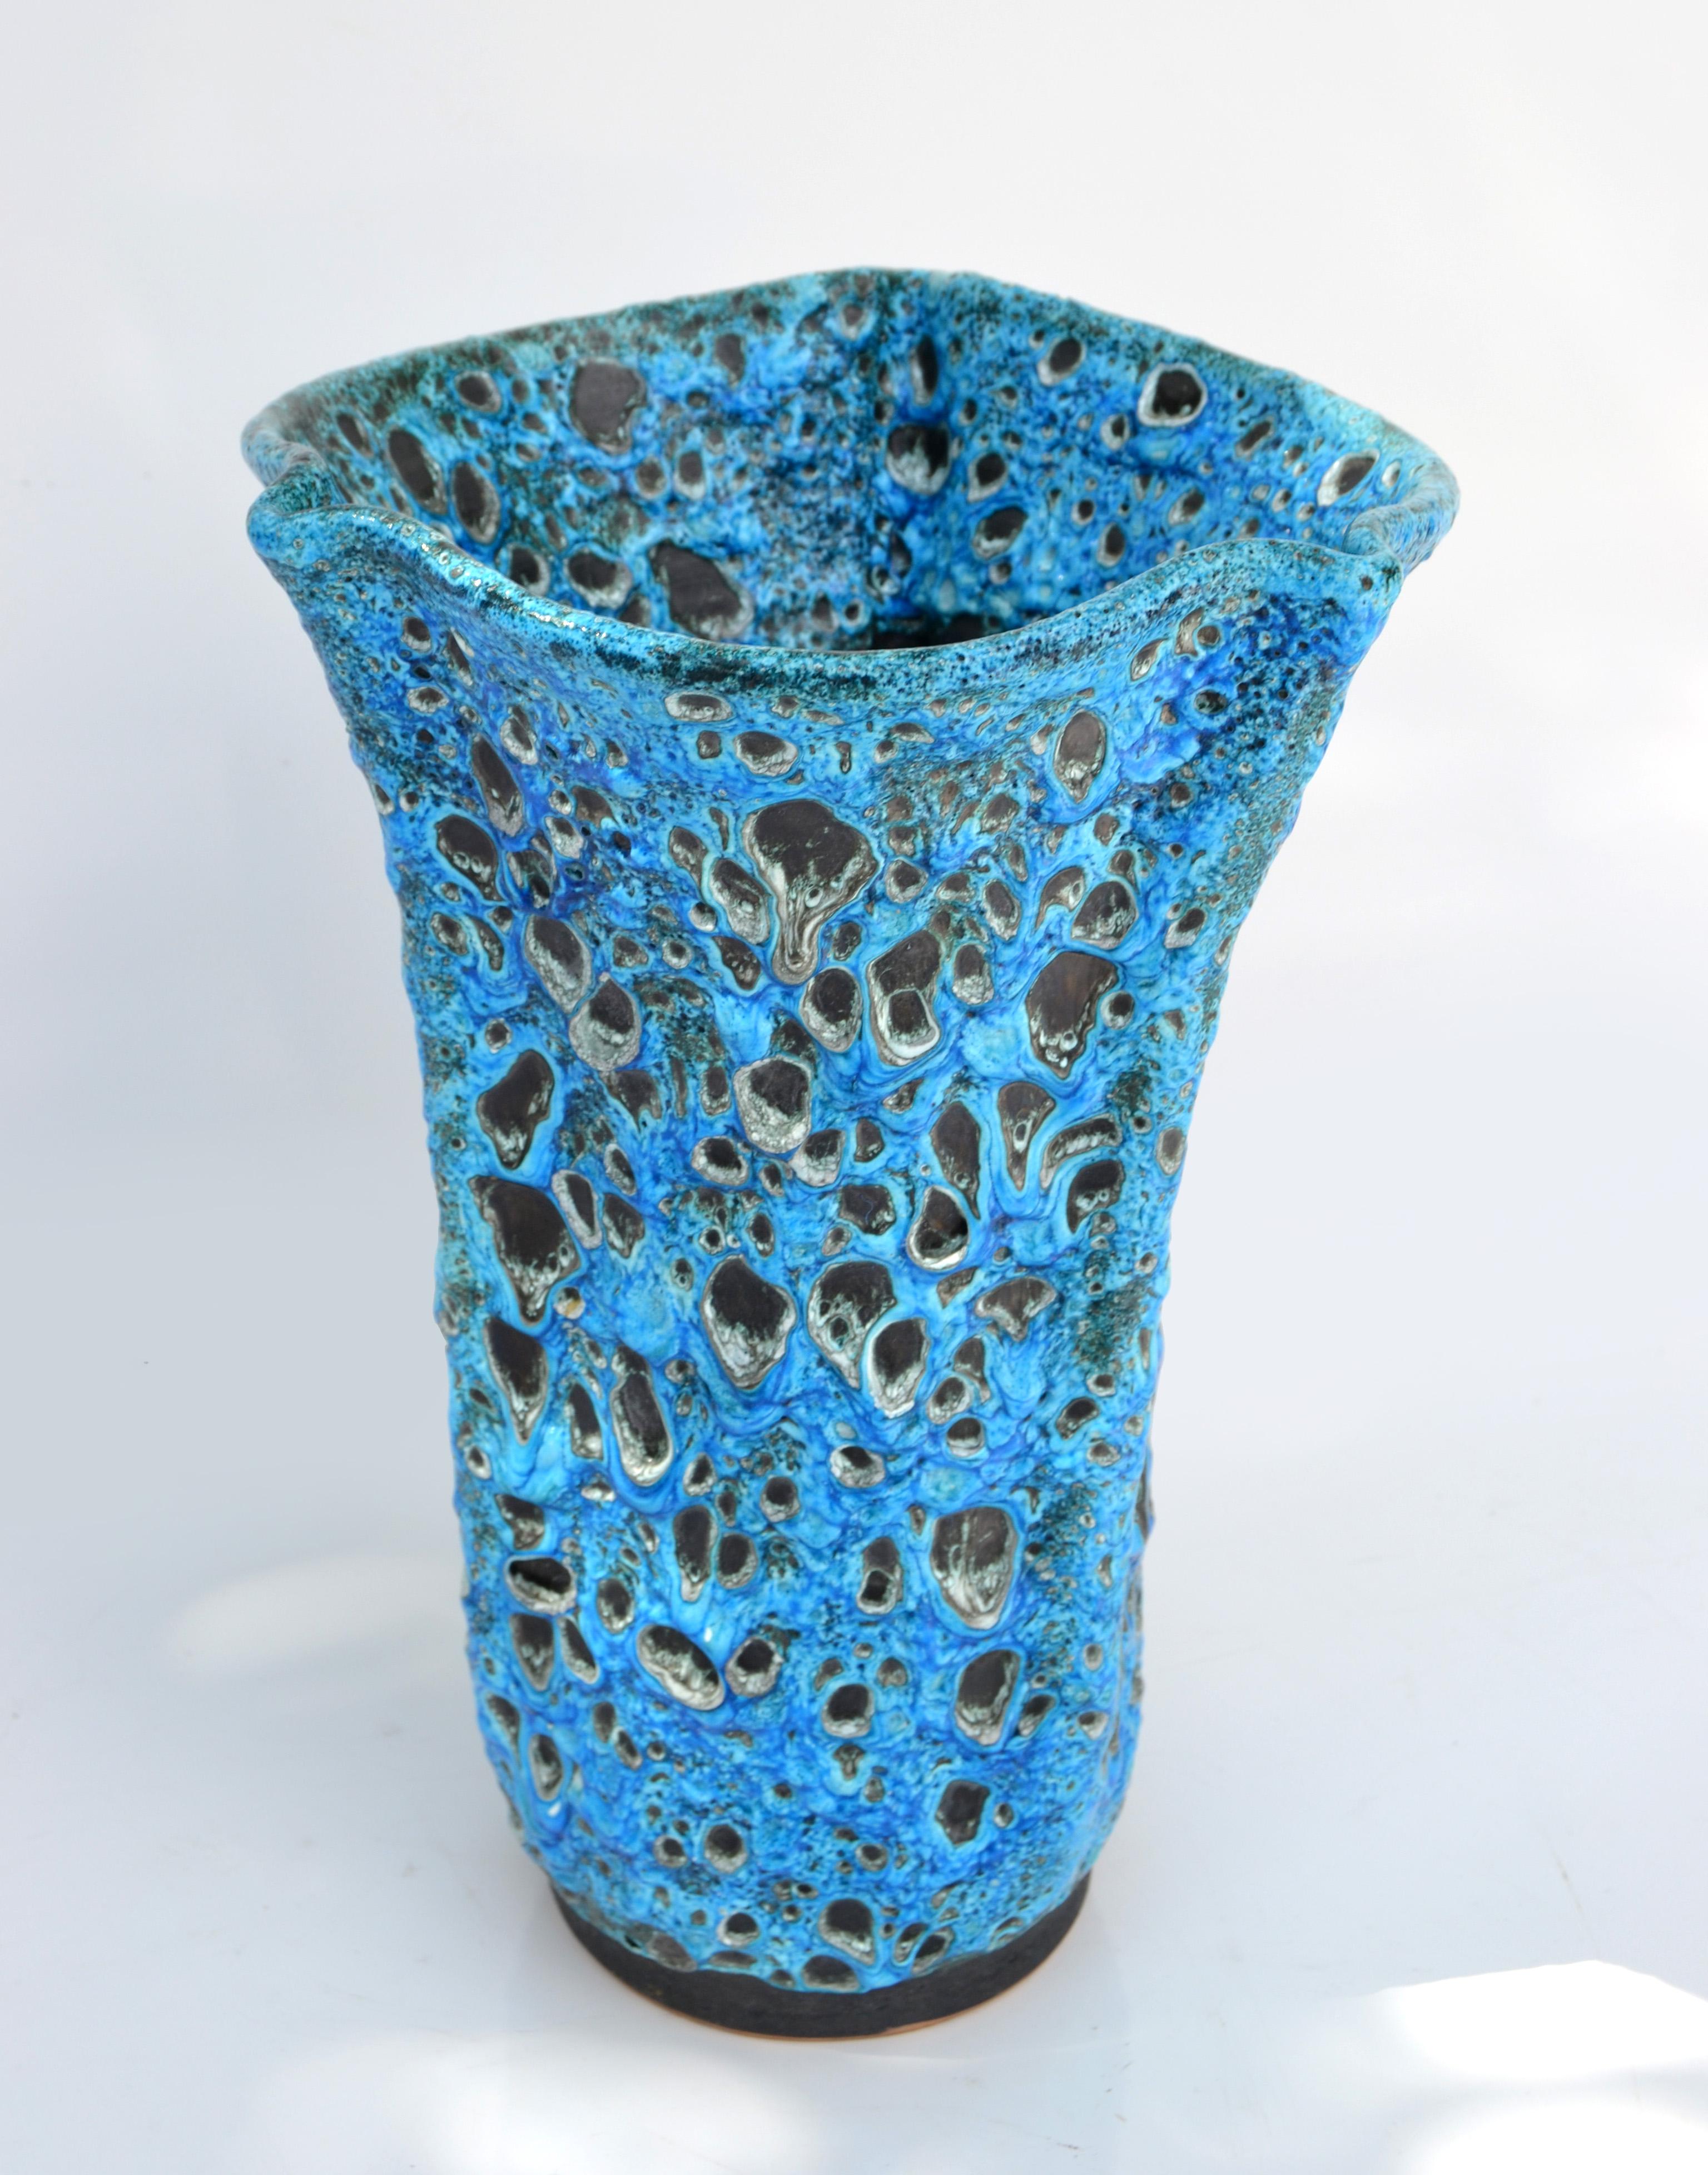 Superbe vase, récipient ou objet d'art en céramique émaillée de style moderne du milieu du siècle dernier, réalisé à la main dans des tons bleus et noirs.
Signé en dessous de Vallauris France.
Vallauris est le célèbre village de la Côte d'Azur où